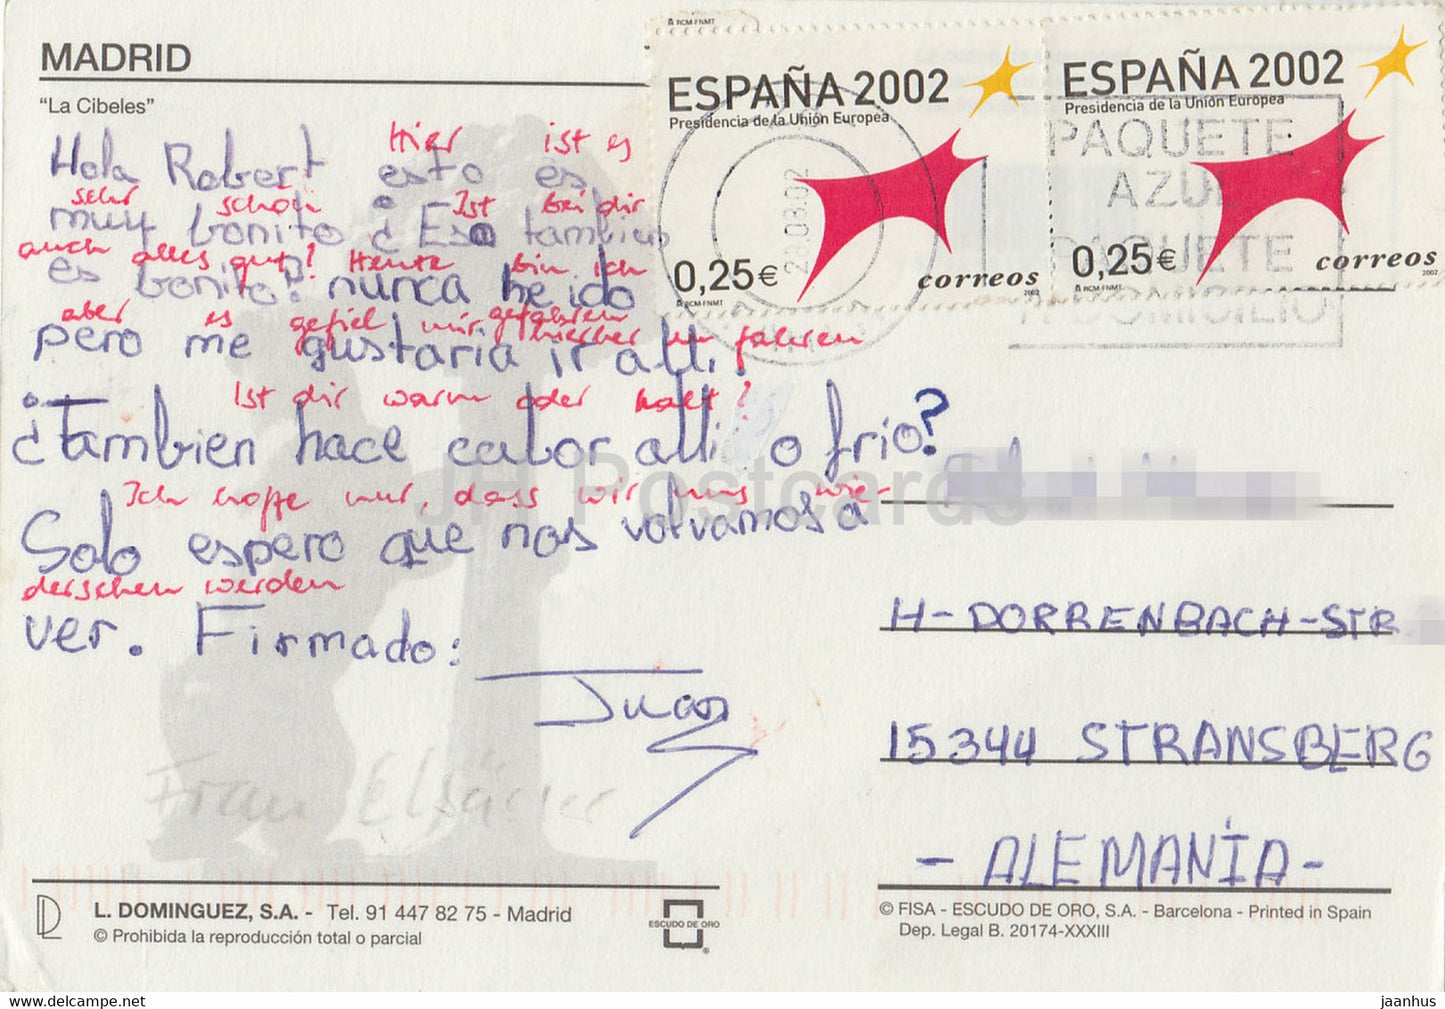 Madrid - La Cibeles - 2002 - Spain - used